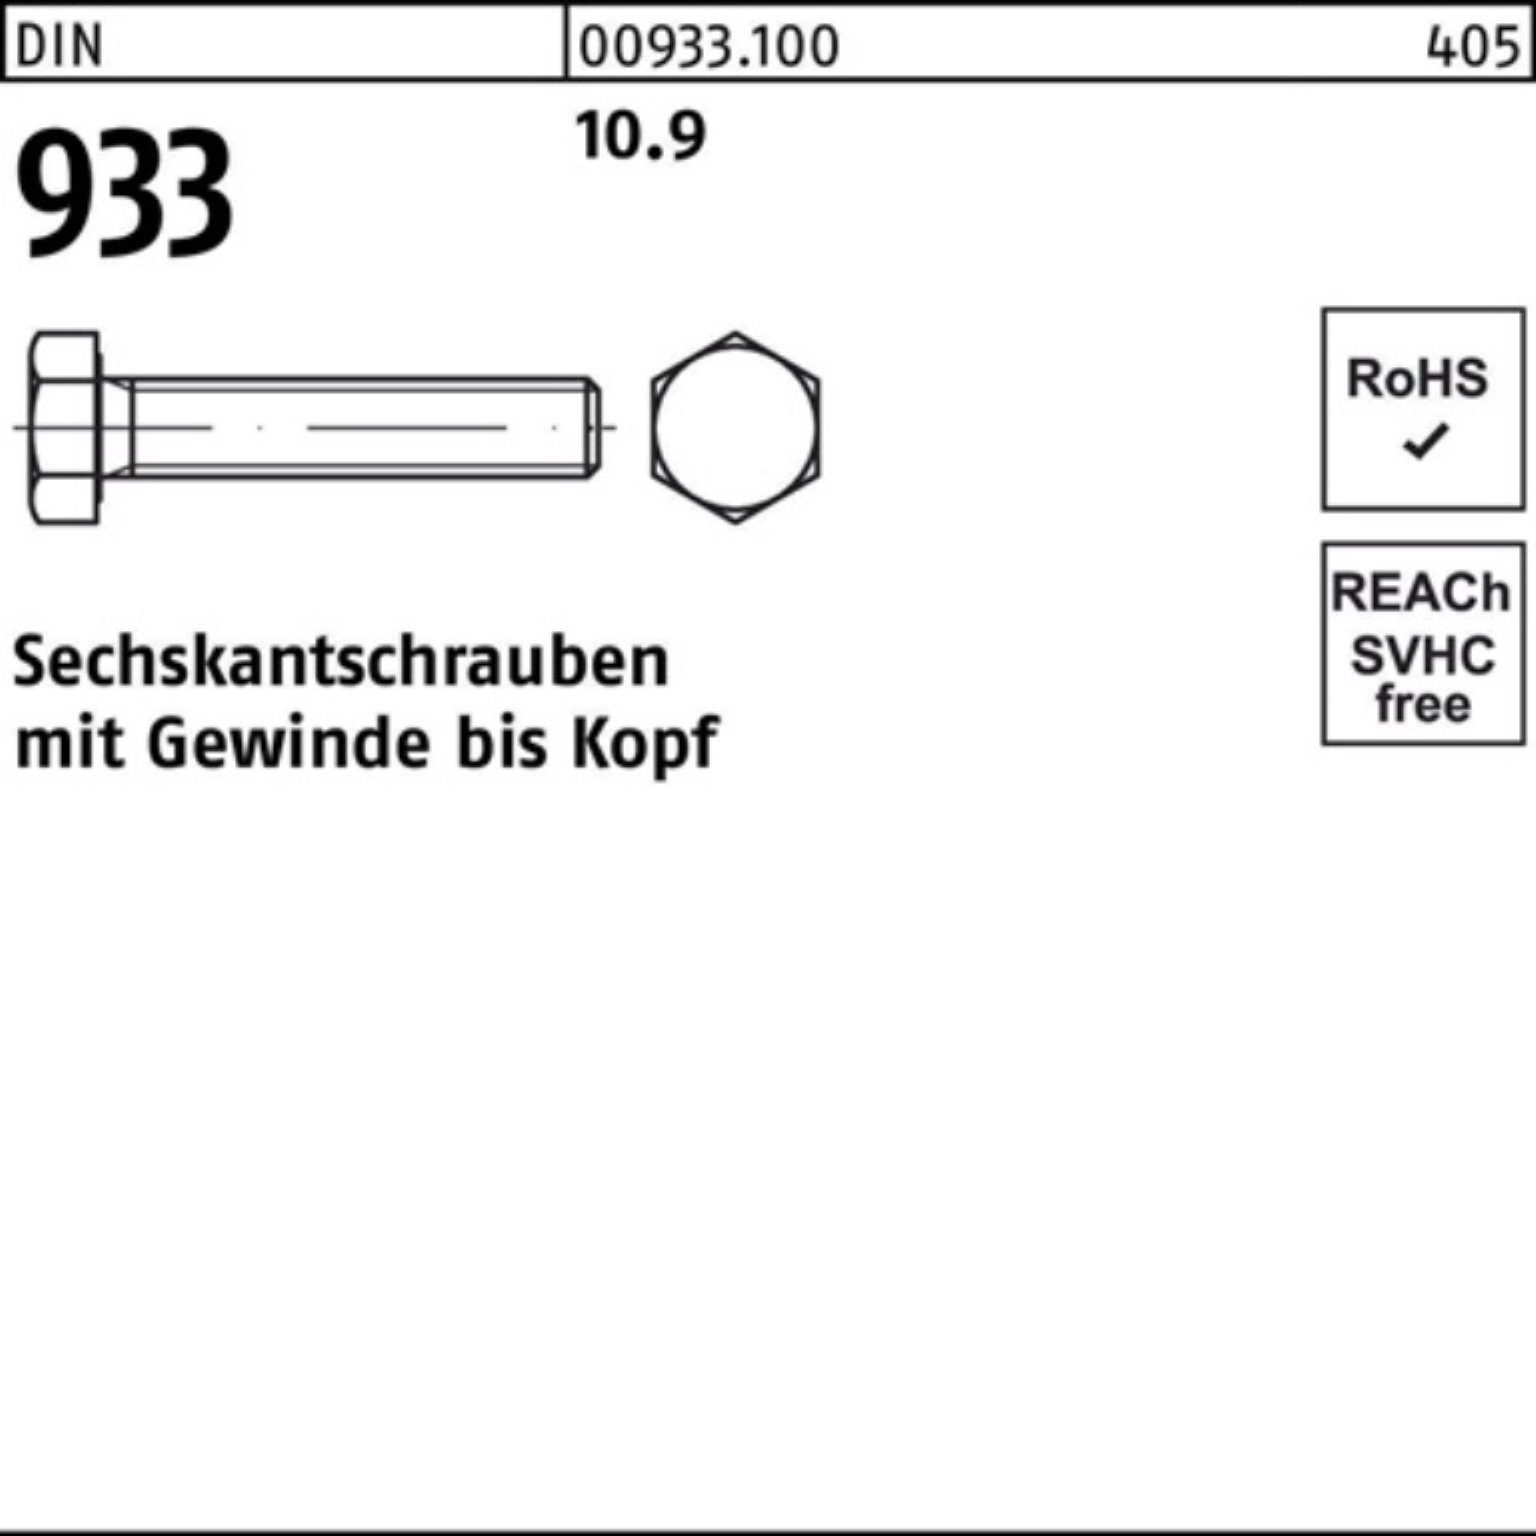 M24x Sechskantschraube Reyher 933 160 100er DIN VG 10.9 1 933 Sechskantschraube Stück DIN Pack